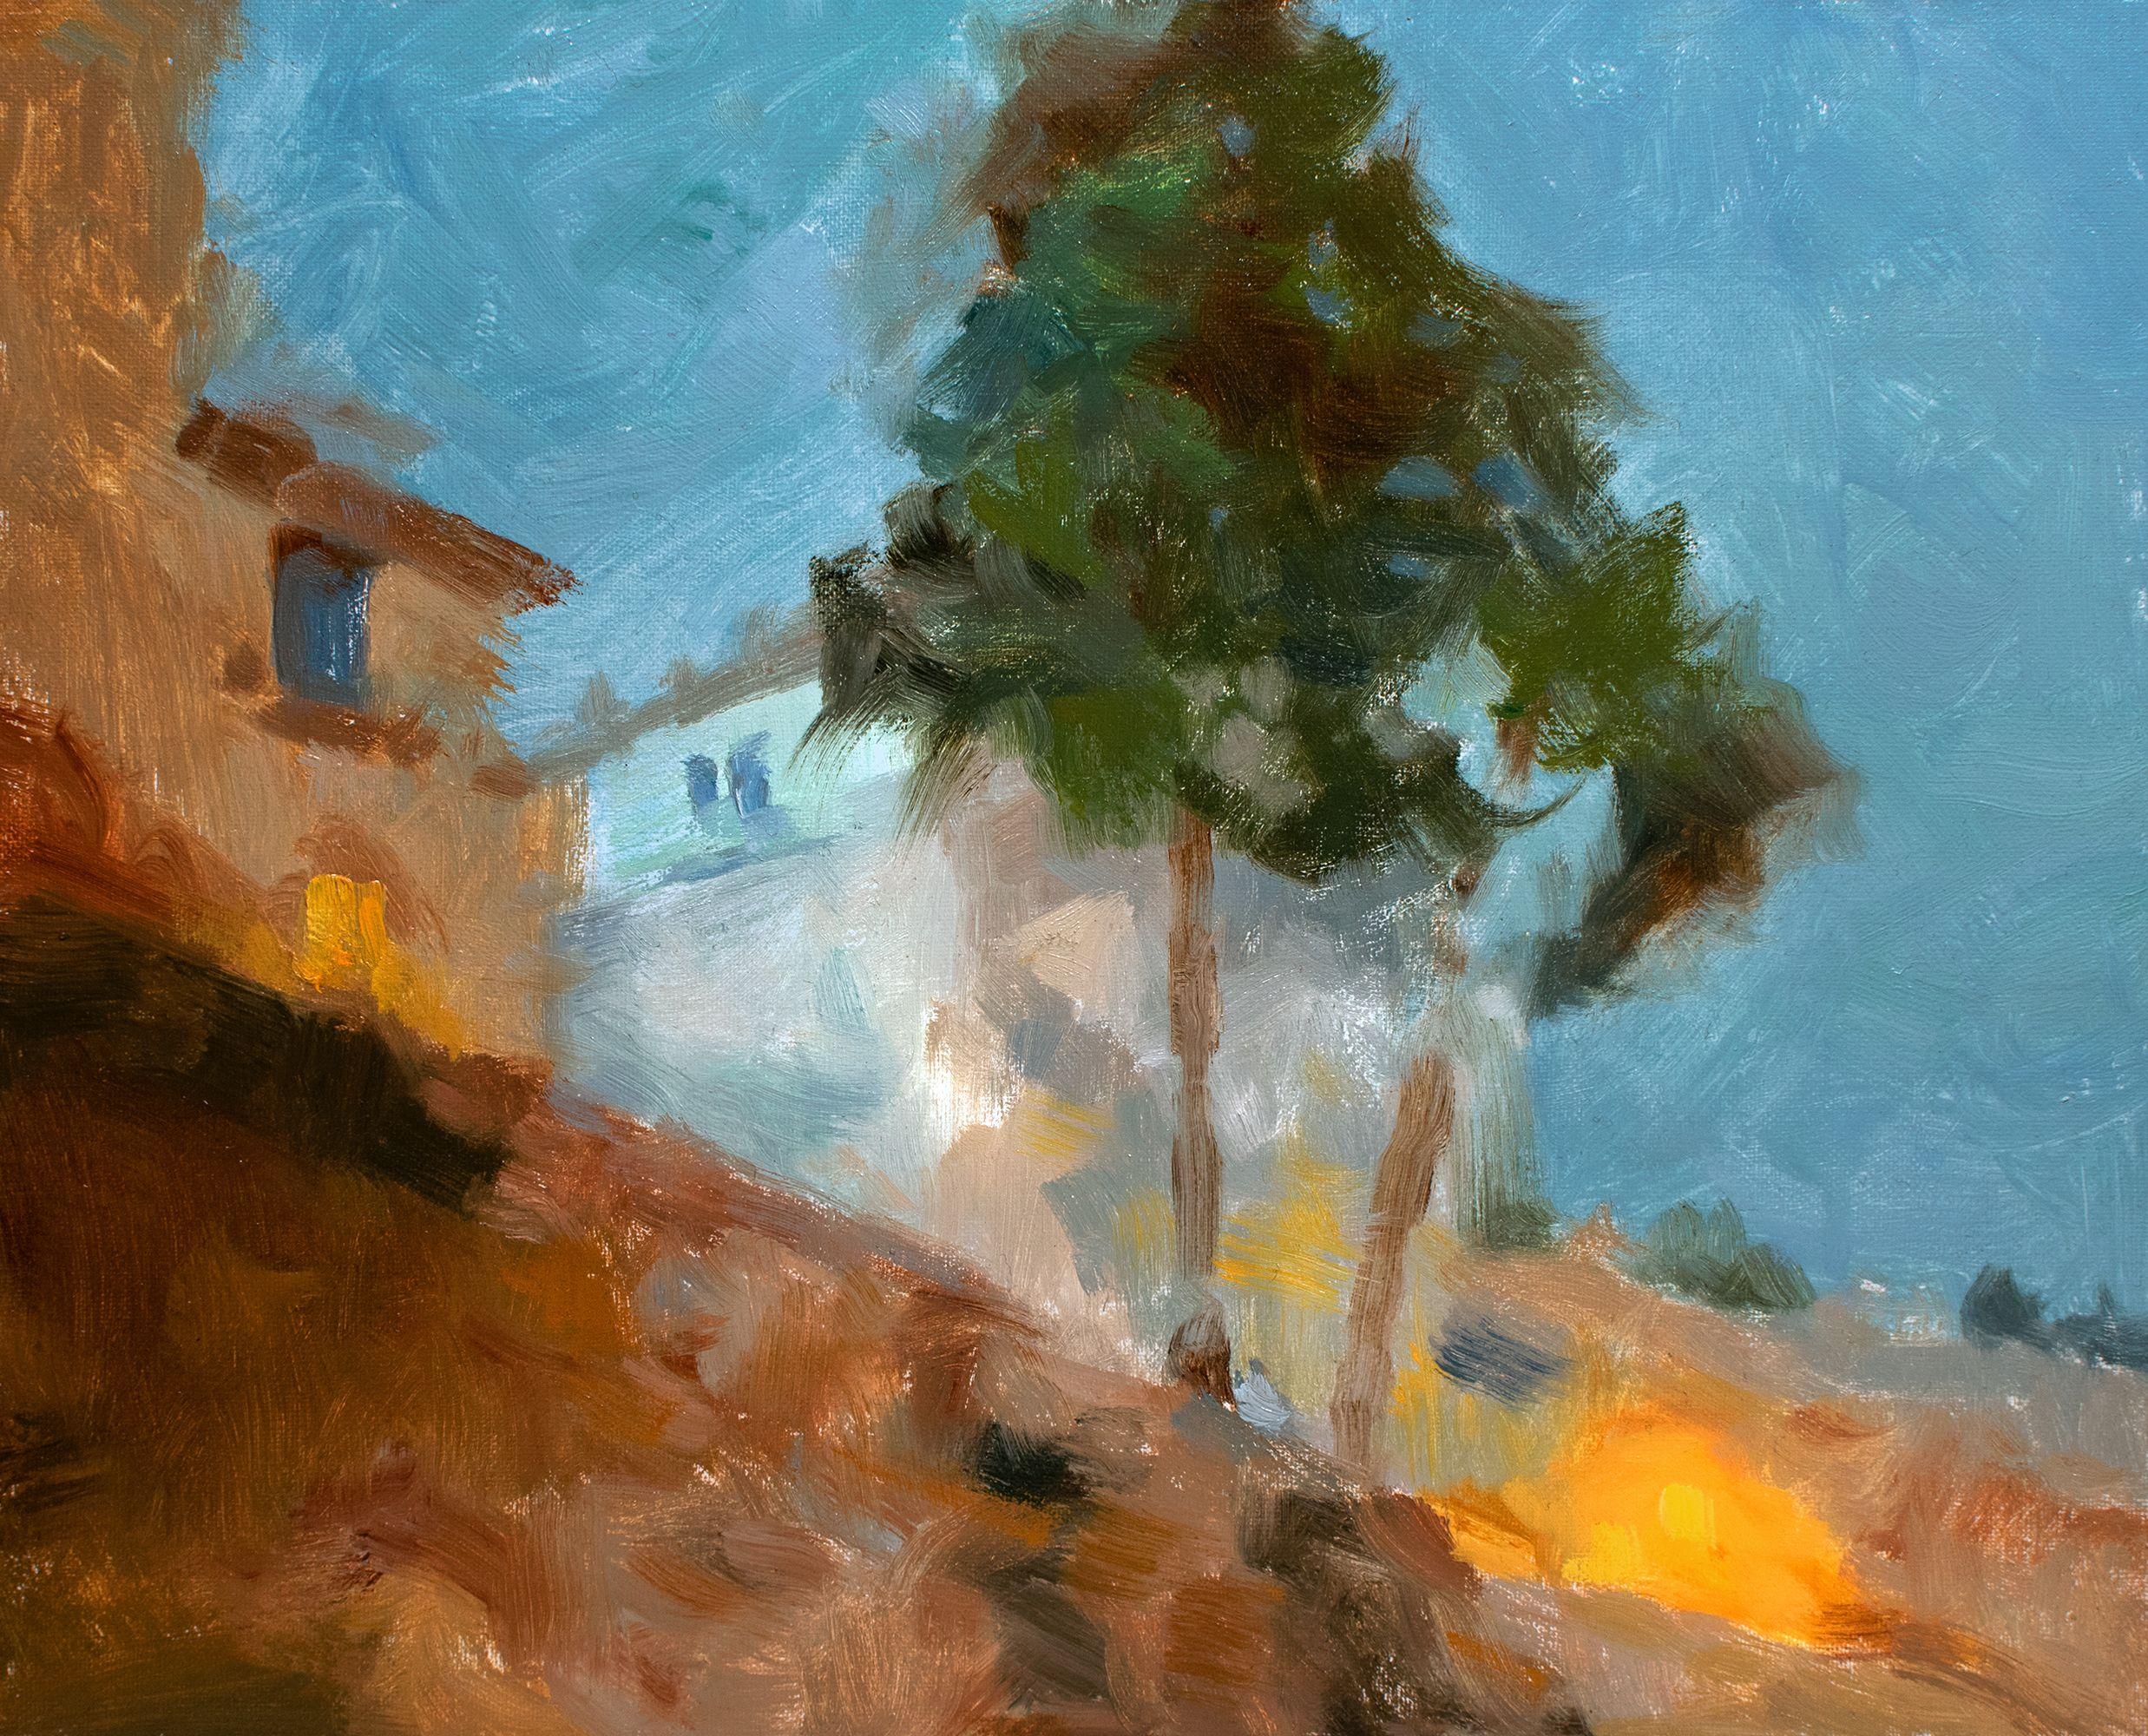 Ville de Rome de la nuit, impressionnisme, peinture, huile sur toile - Painting de Gav Banns